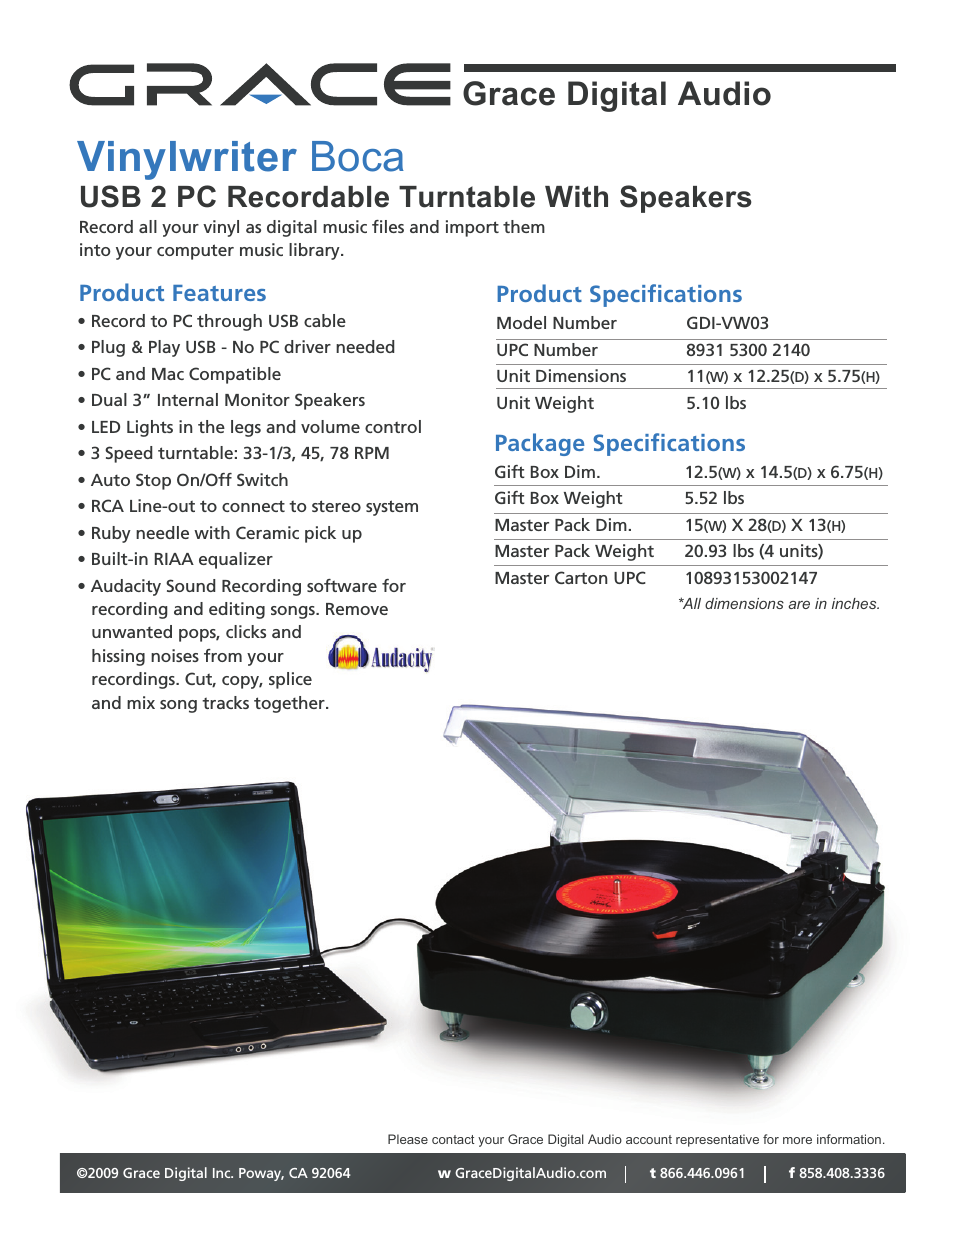 Vinylwriter Boca GDI-VW03